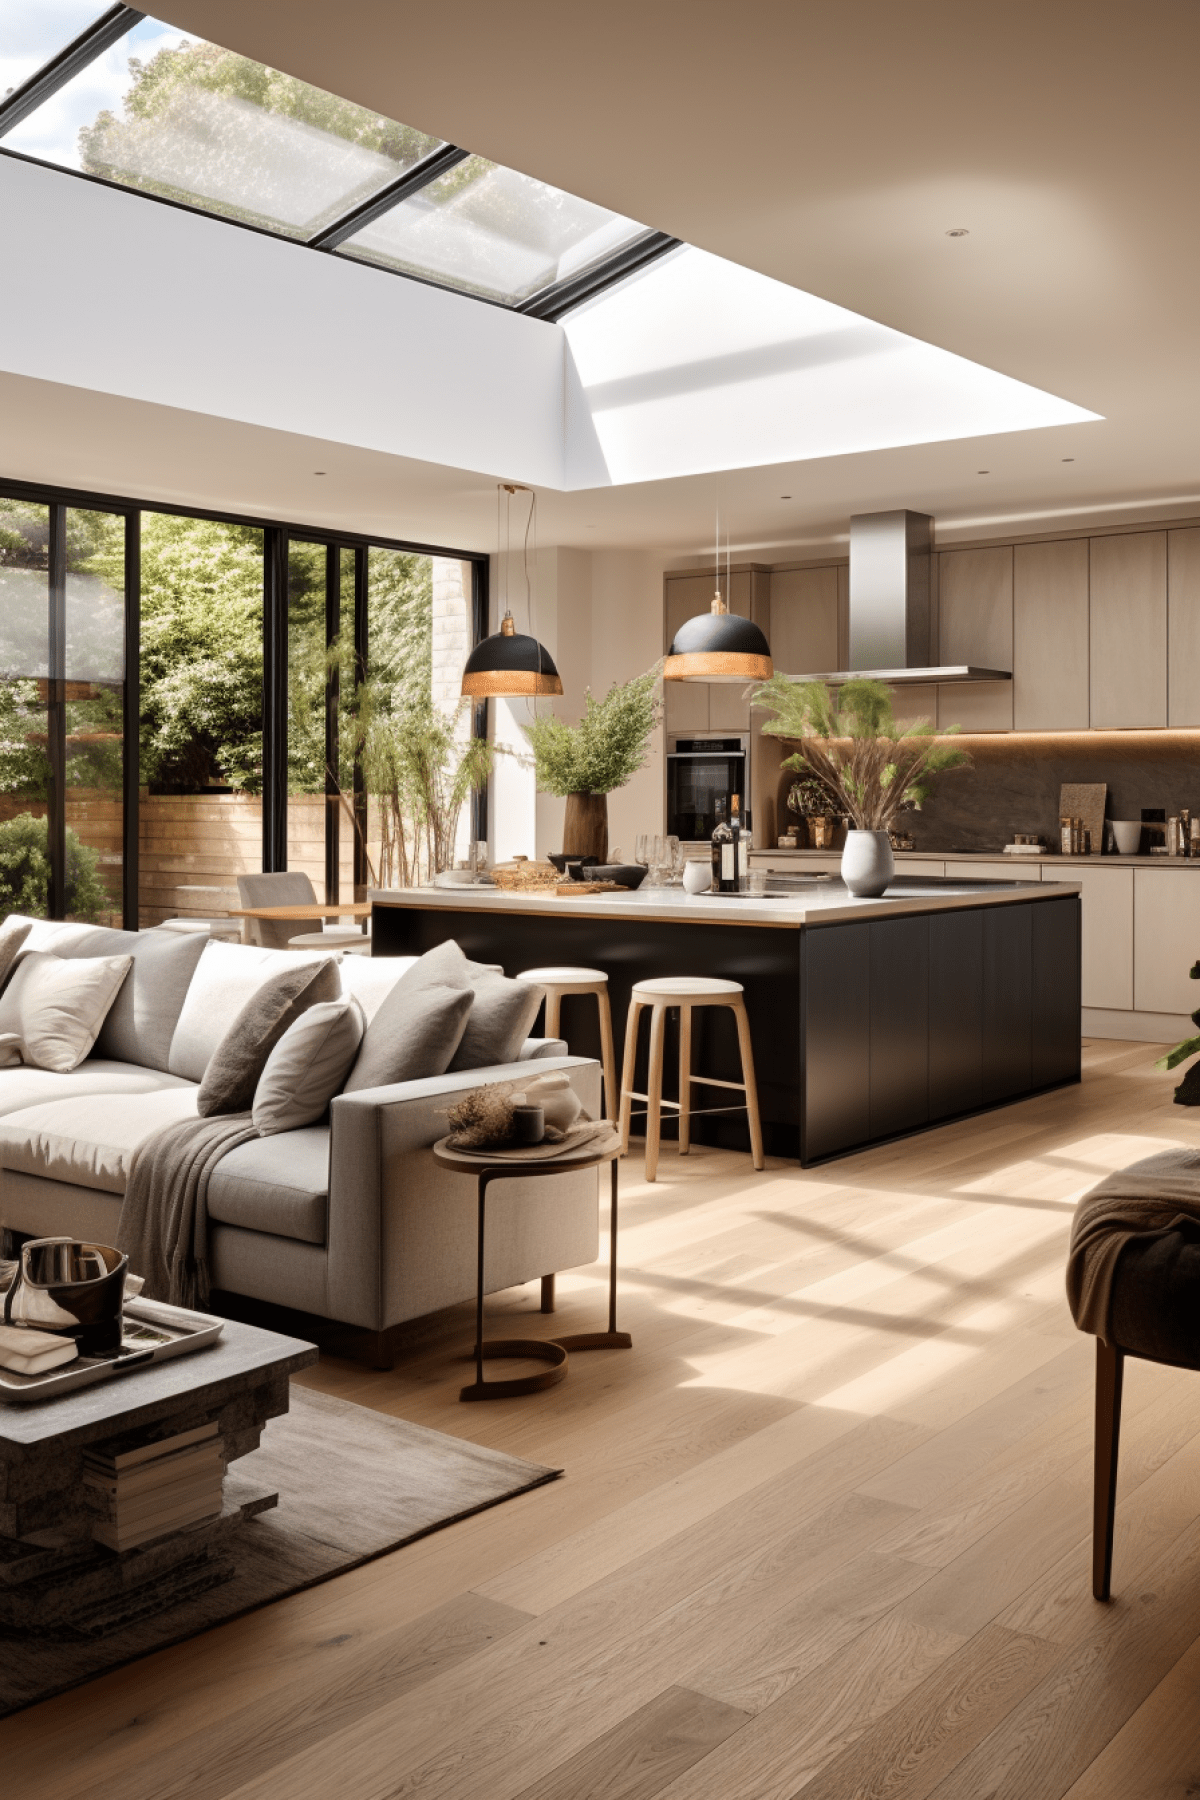 Best house interior design ideas in 2019